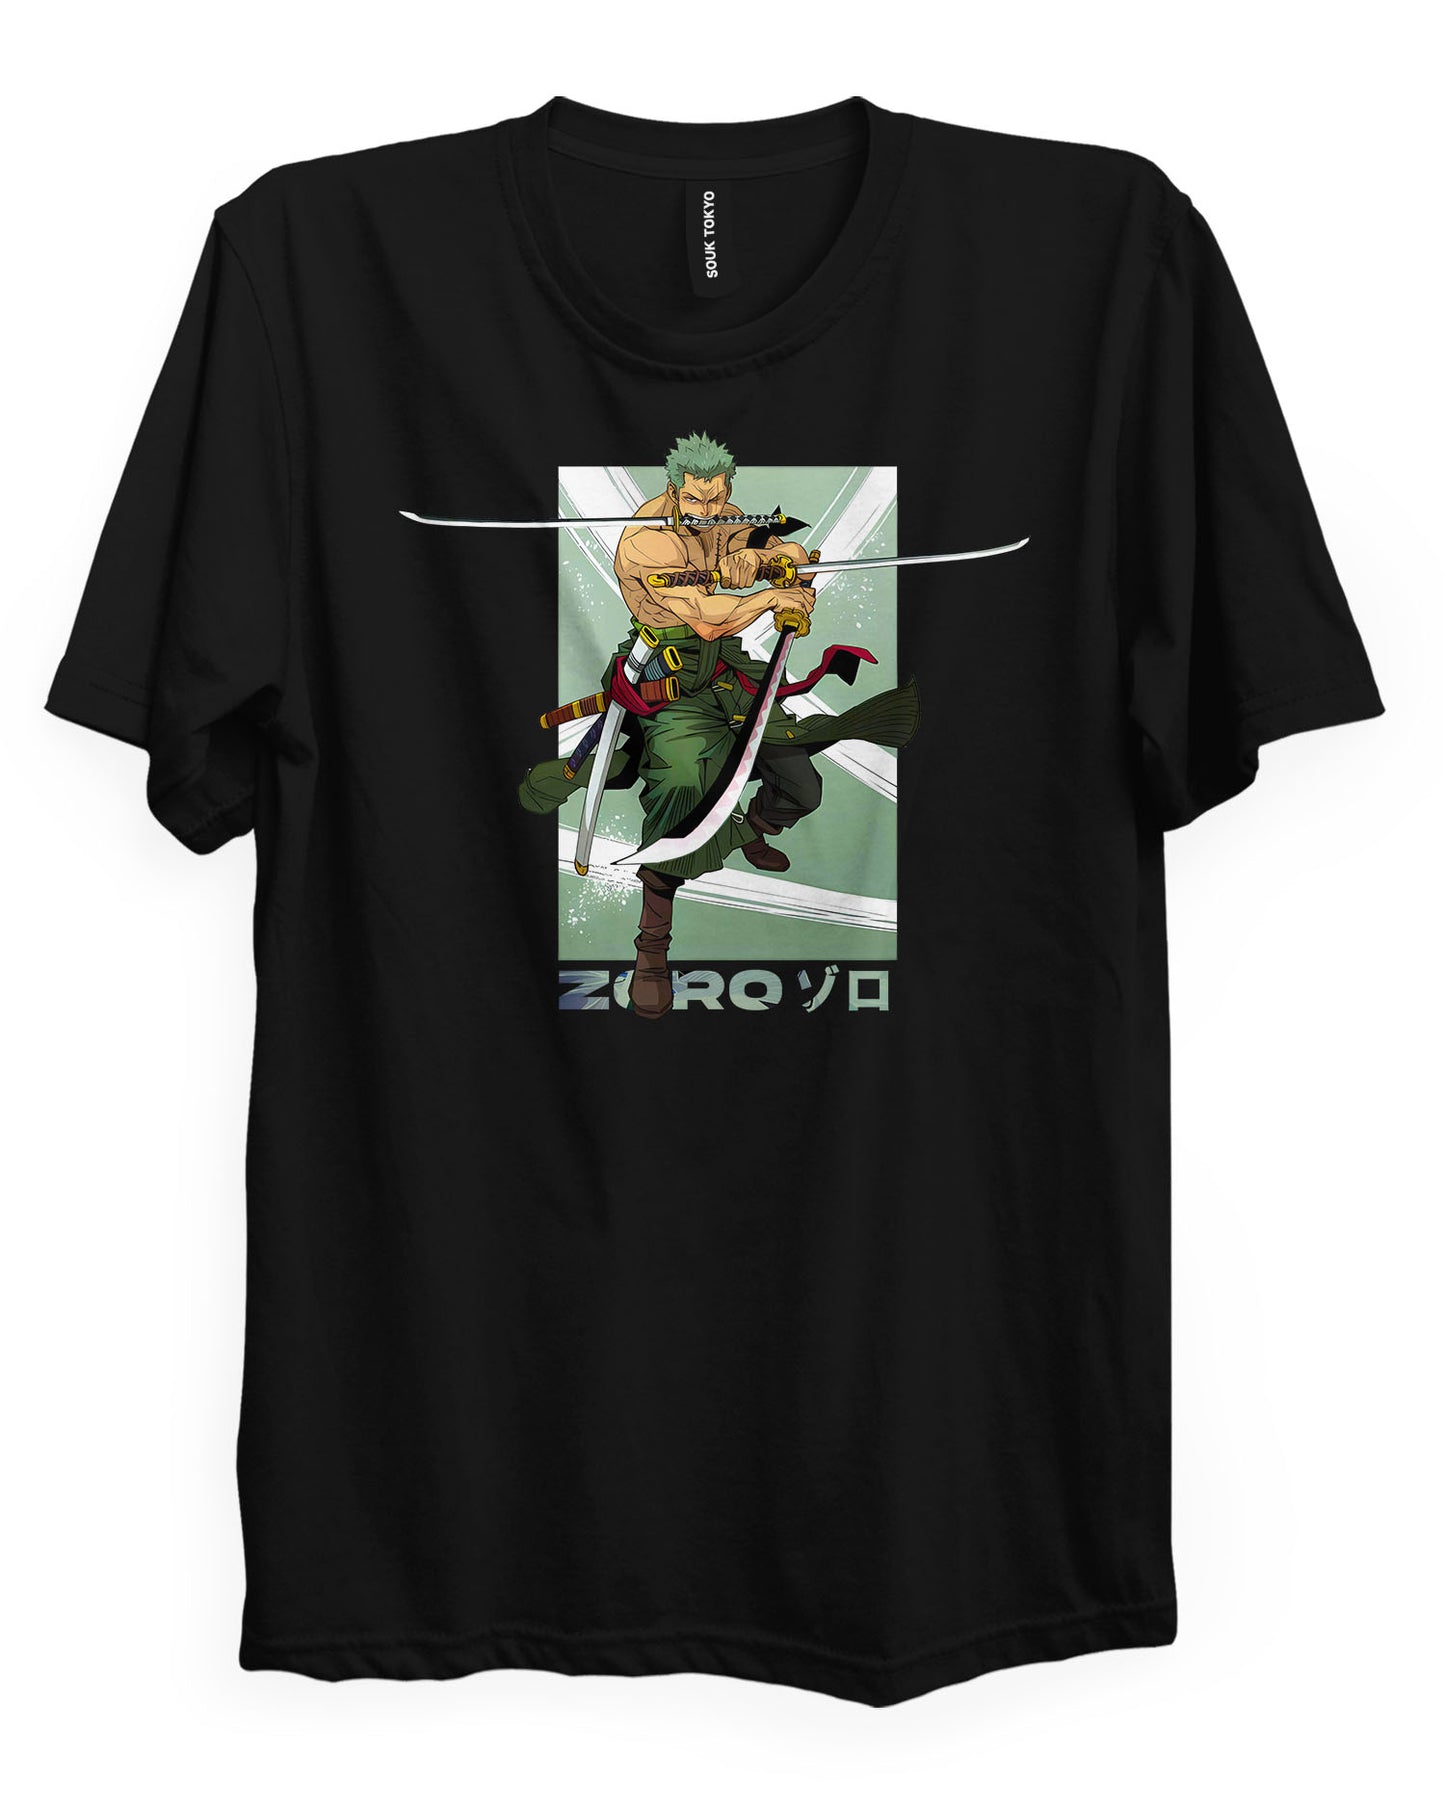 Zoro (NINJA) T-Shirt